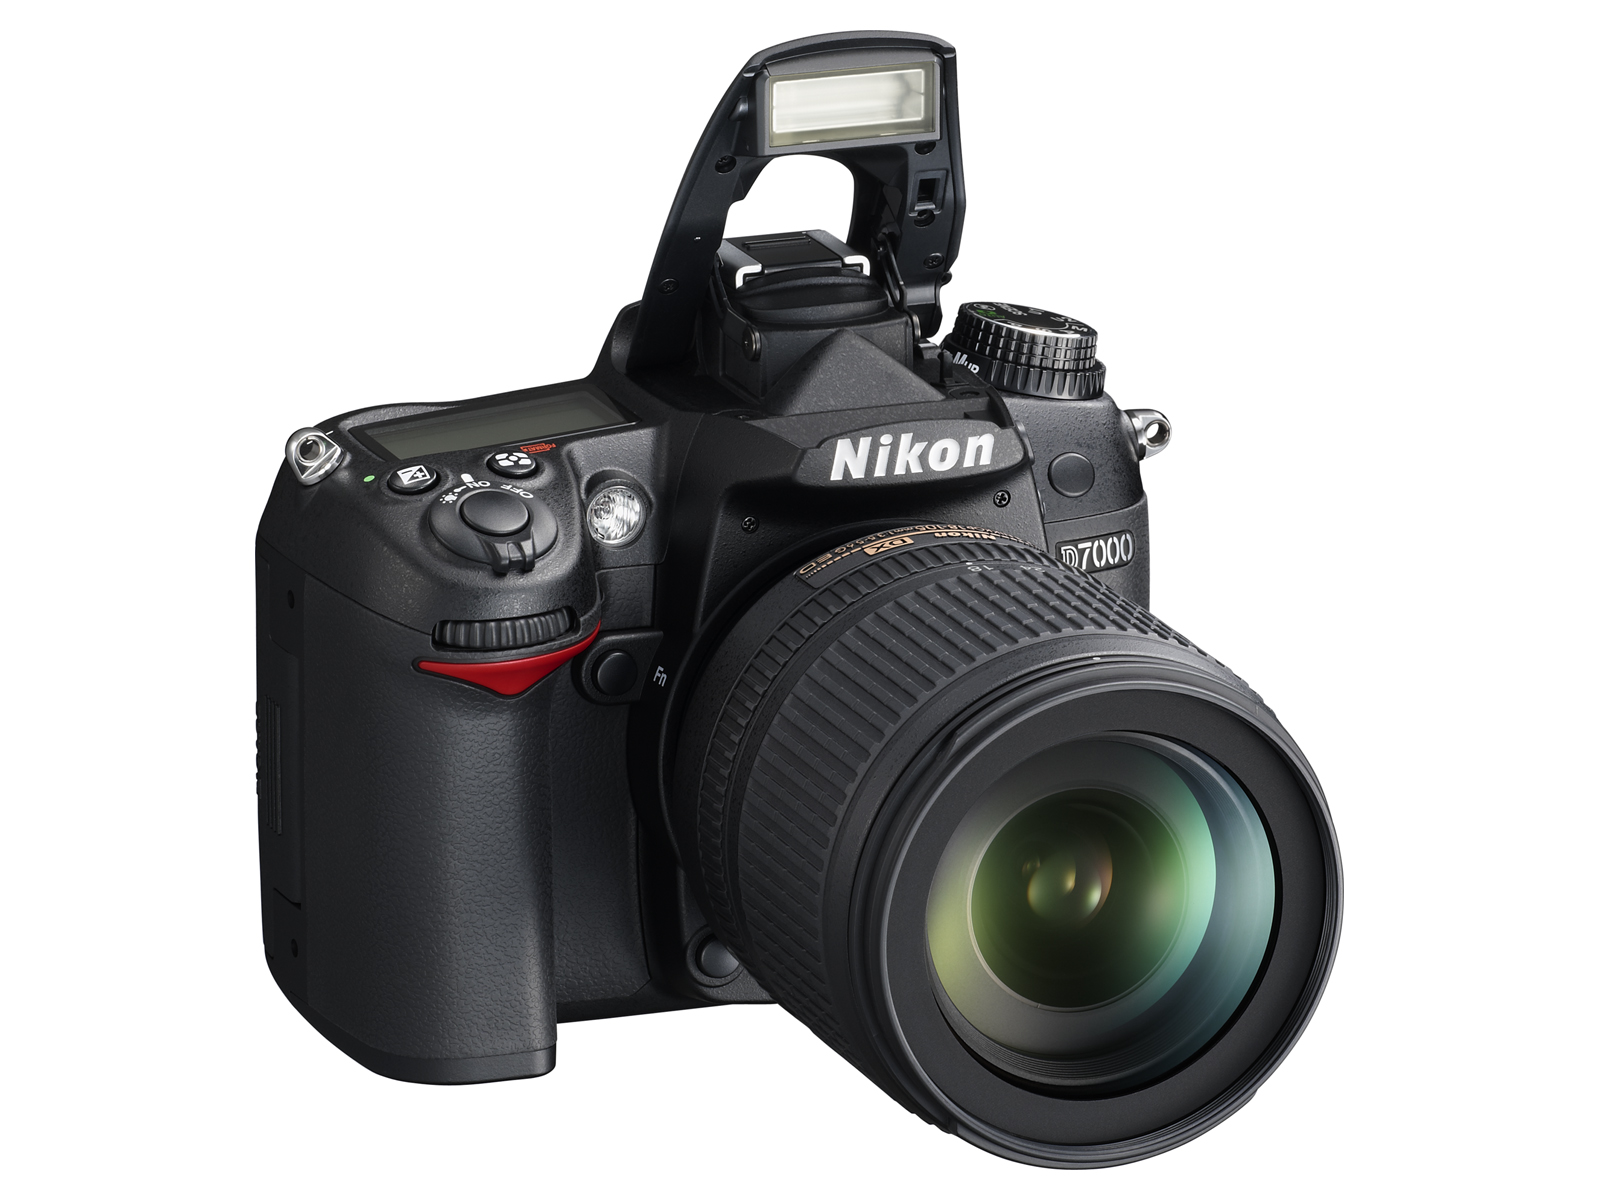 Nikon d7000 инструкция скачать бесплатно